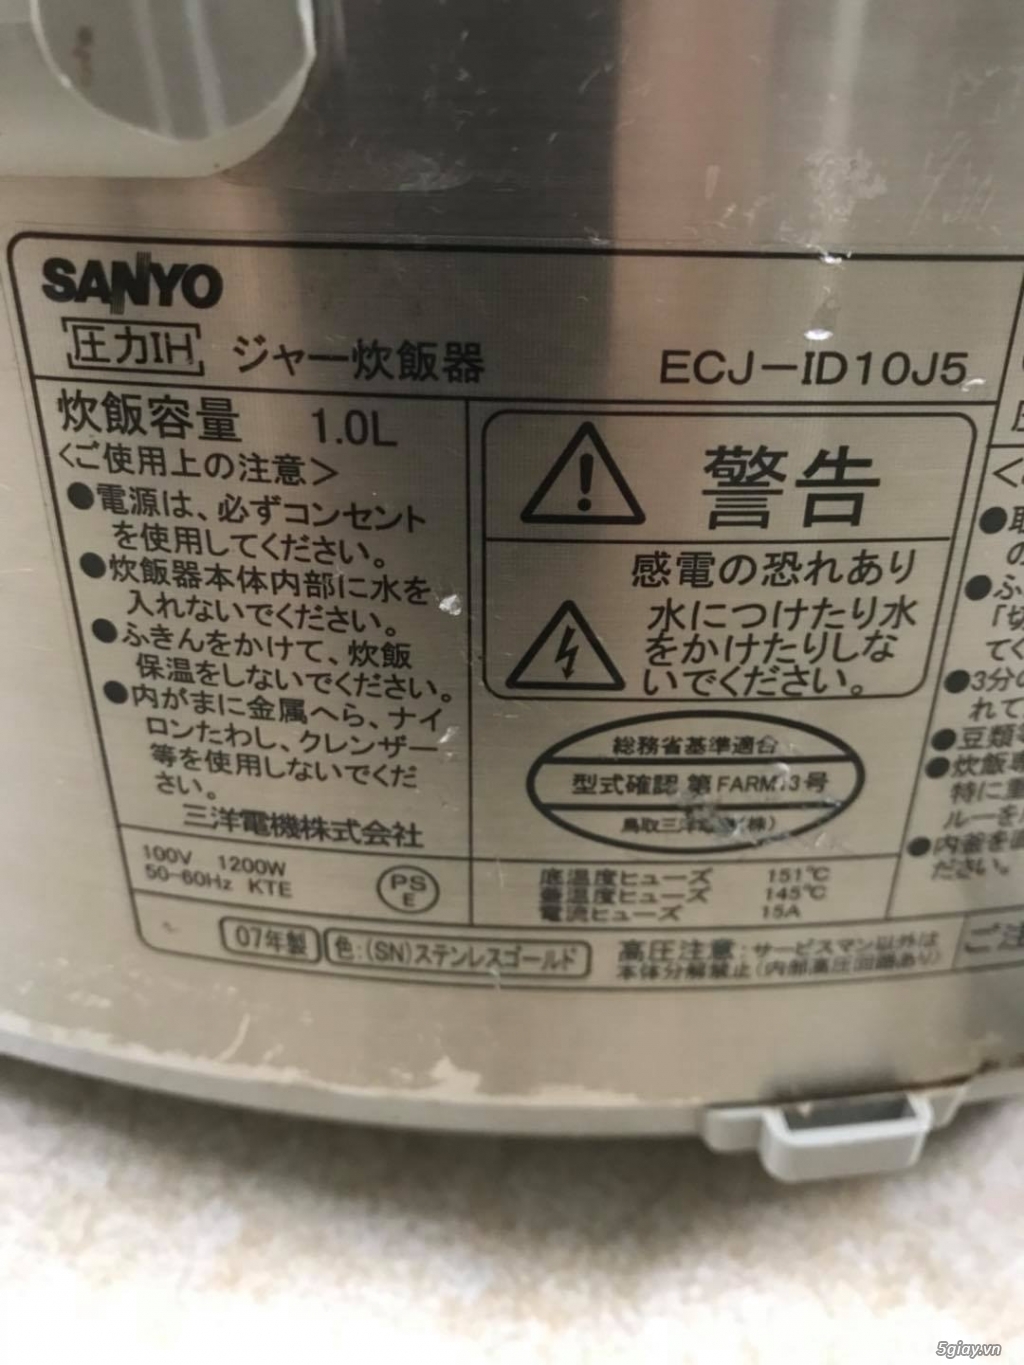 Nồi cơm Sanyo ECJ-ID10J5, năm sản xuất 2007 - 5